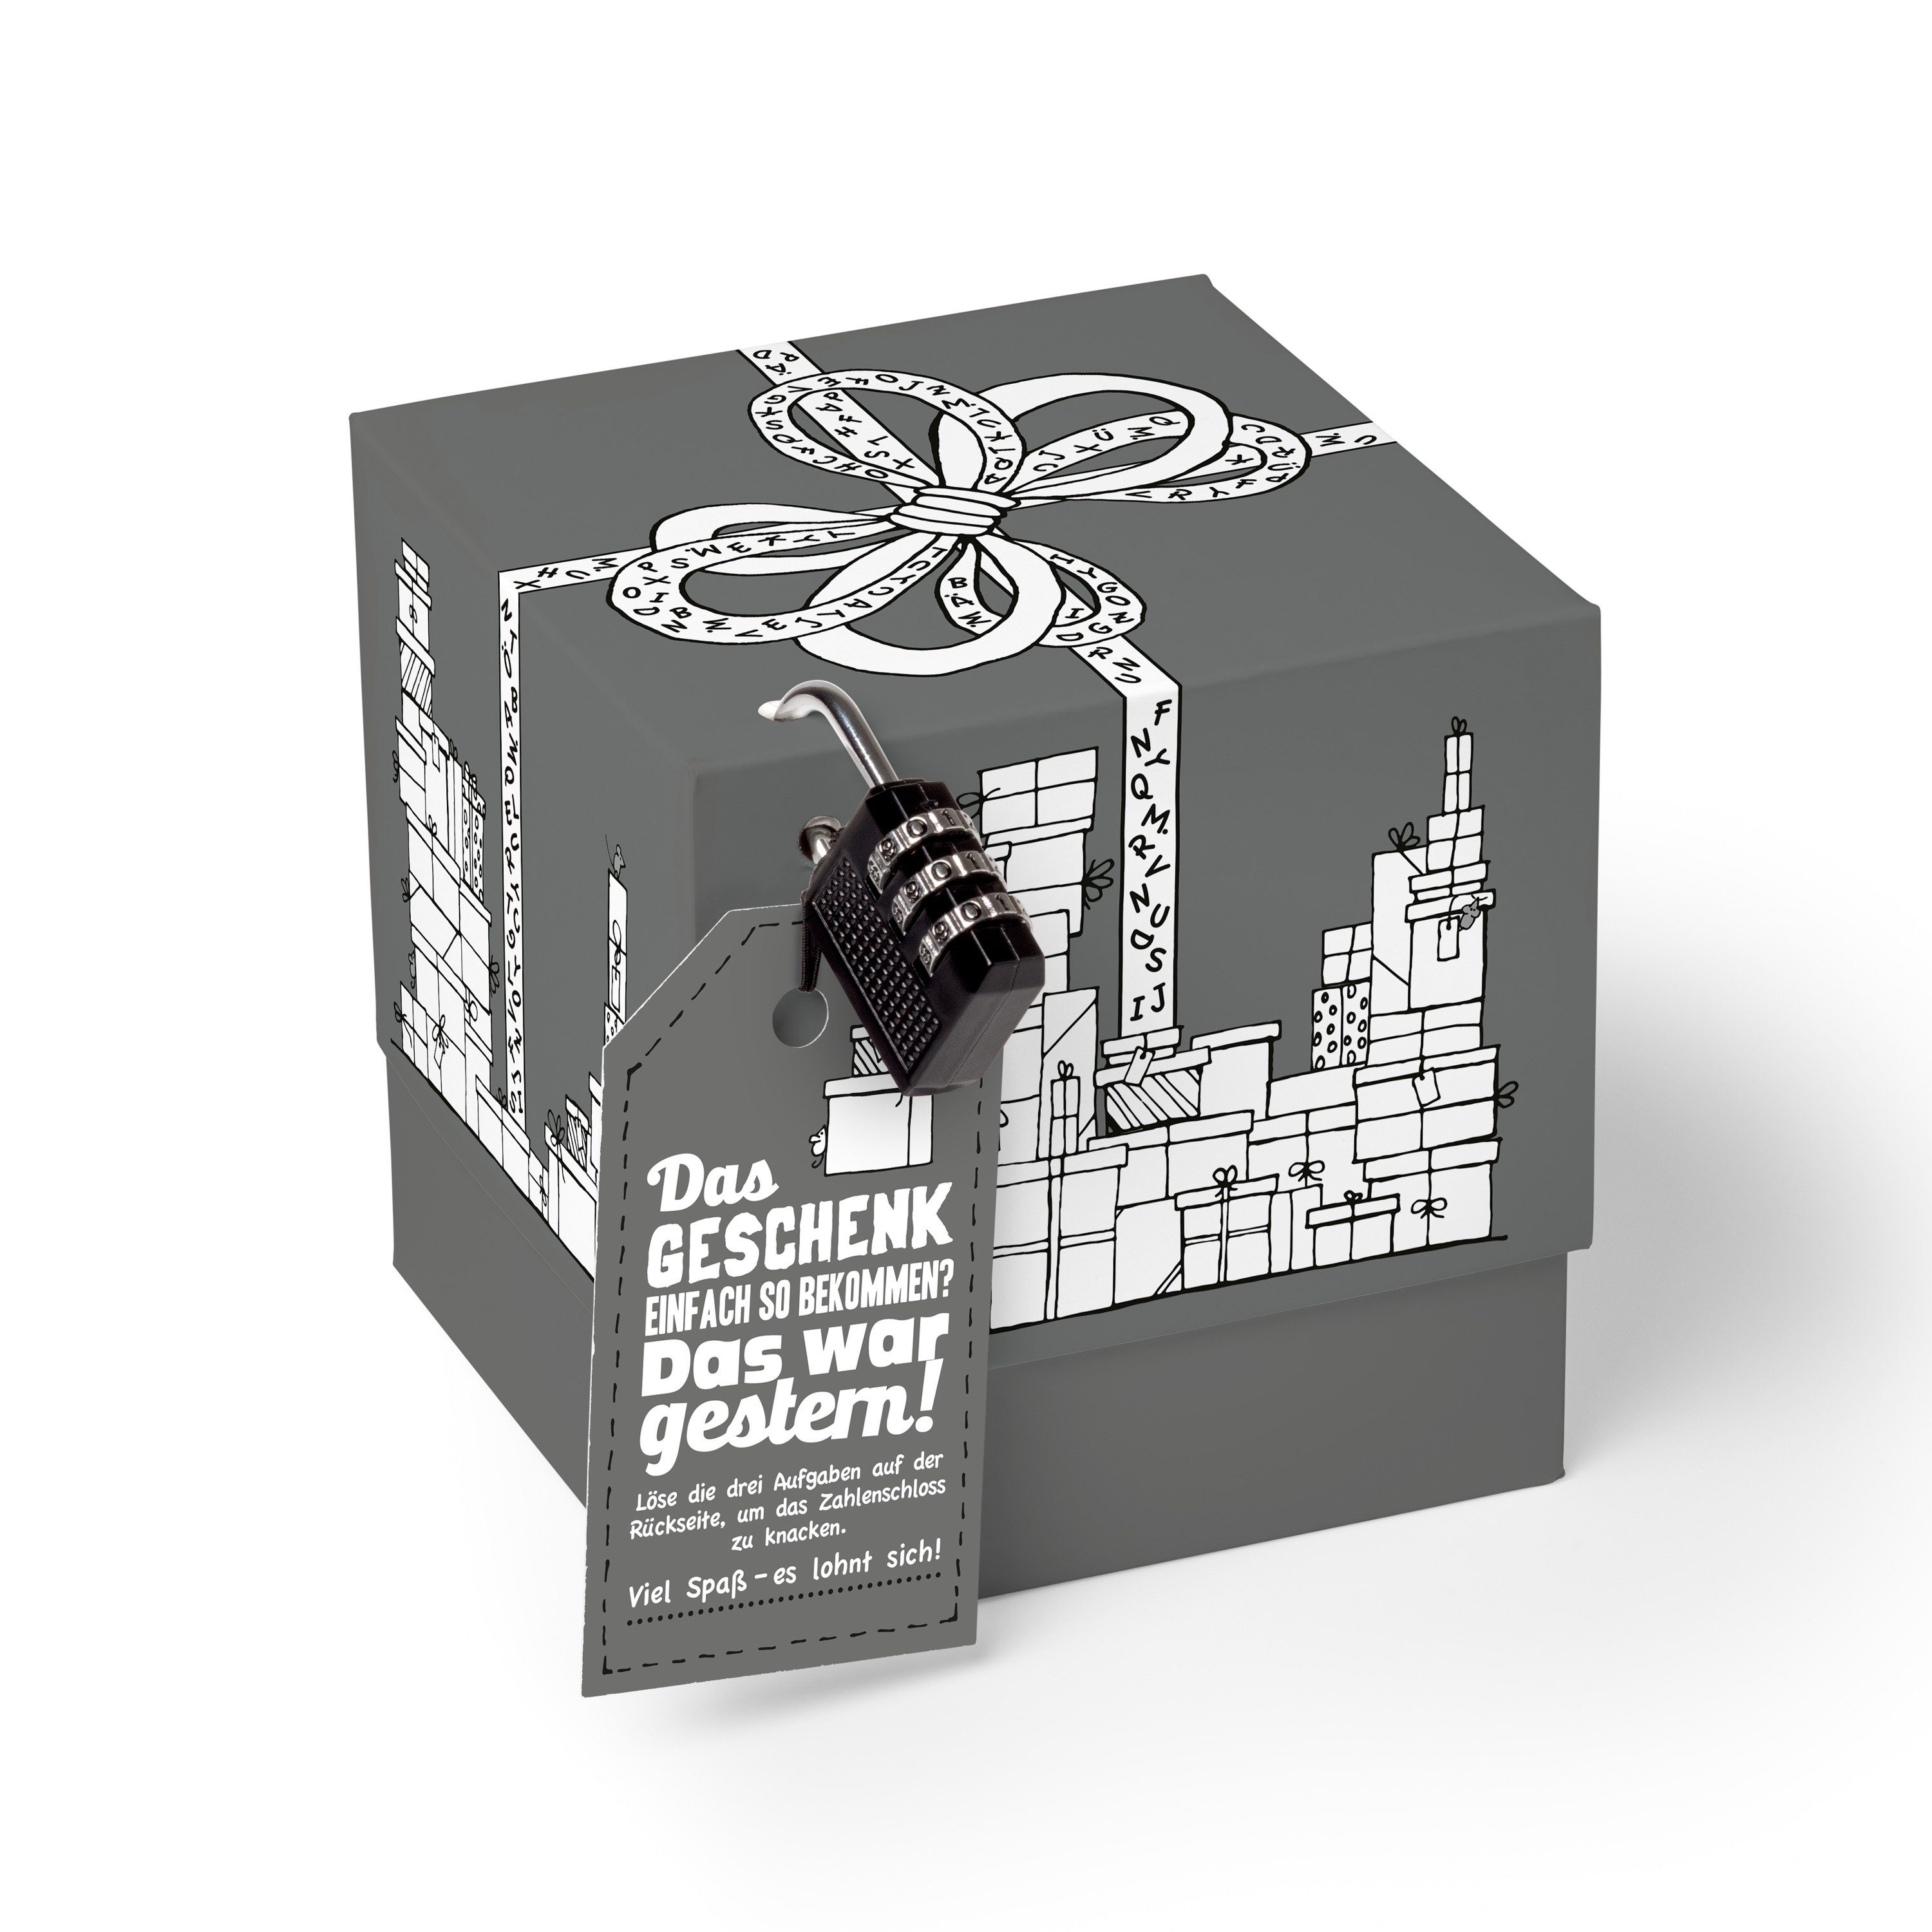 SURPRISA Geschenkbox Rätselbox persönliche grau Geschenkverpackung + Männer, Geschenke, Grau Geschenkrätsel für Geburtstagsgeschenk Rätselspiel, 